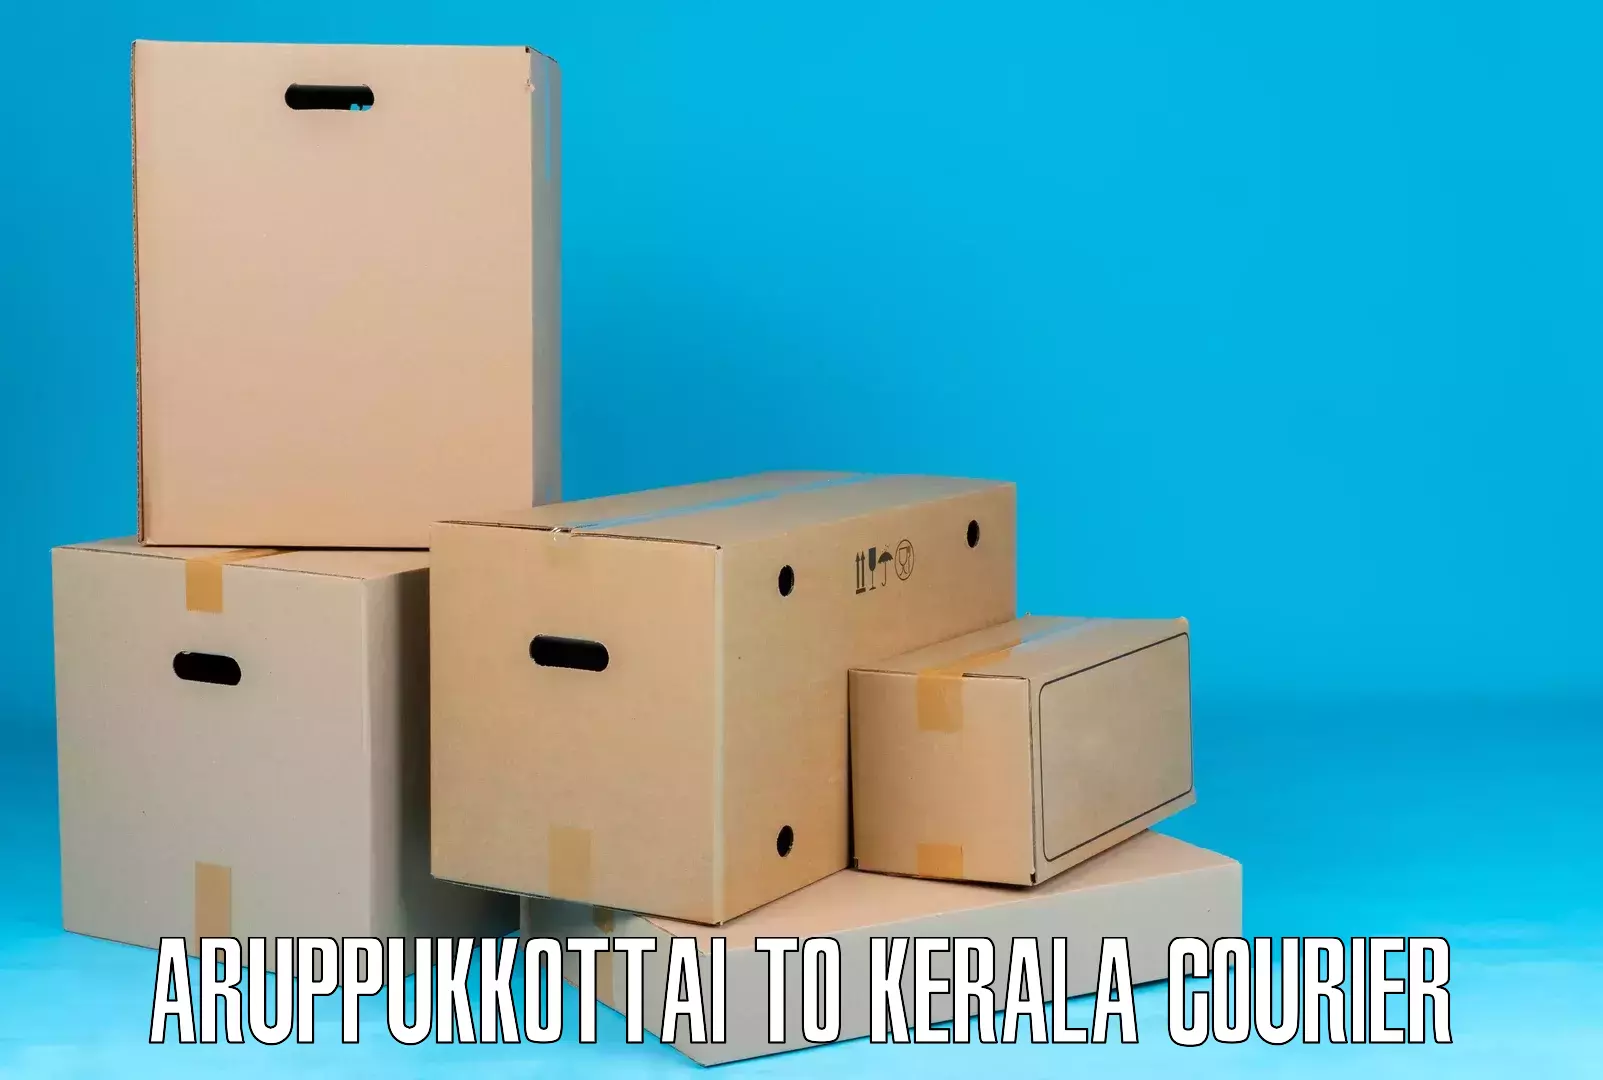 Sustainable courier practices Aruppukkottai to Kadanad